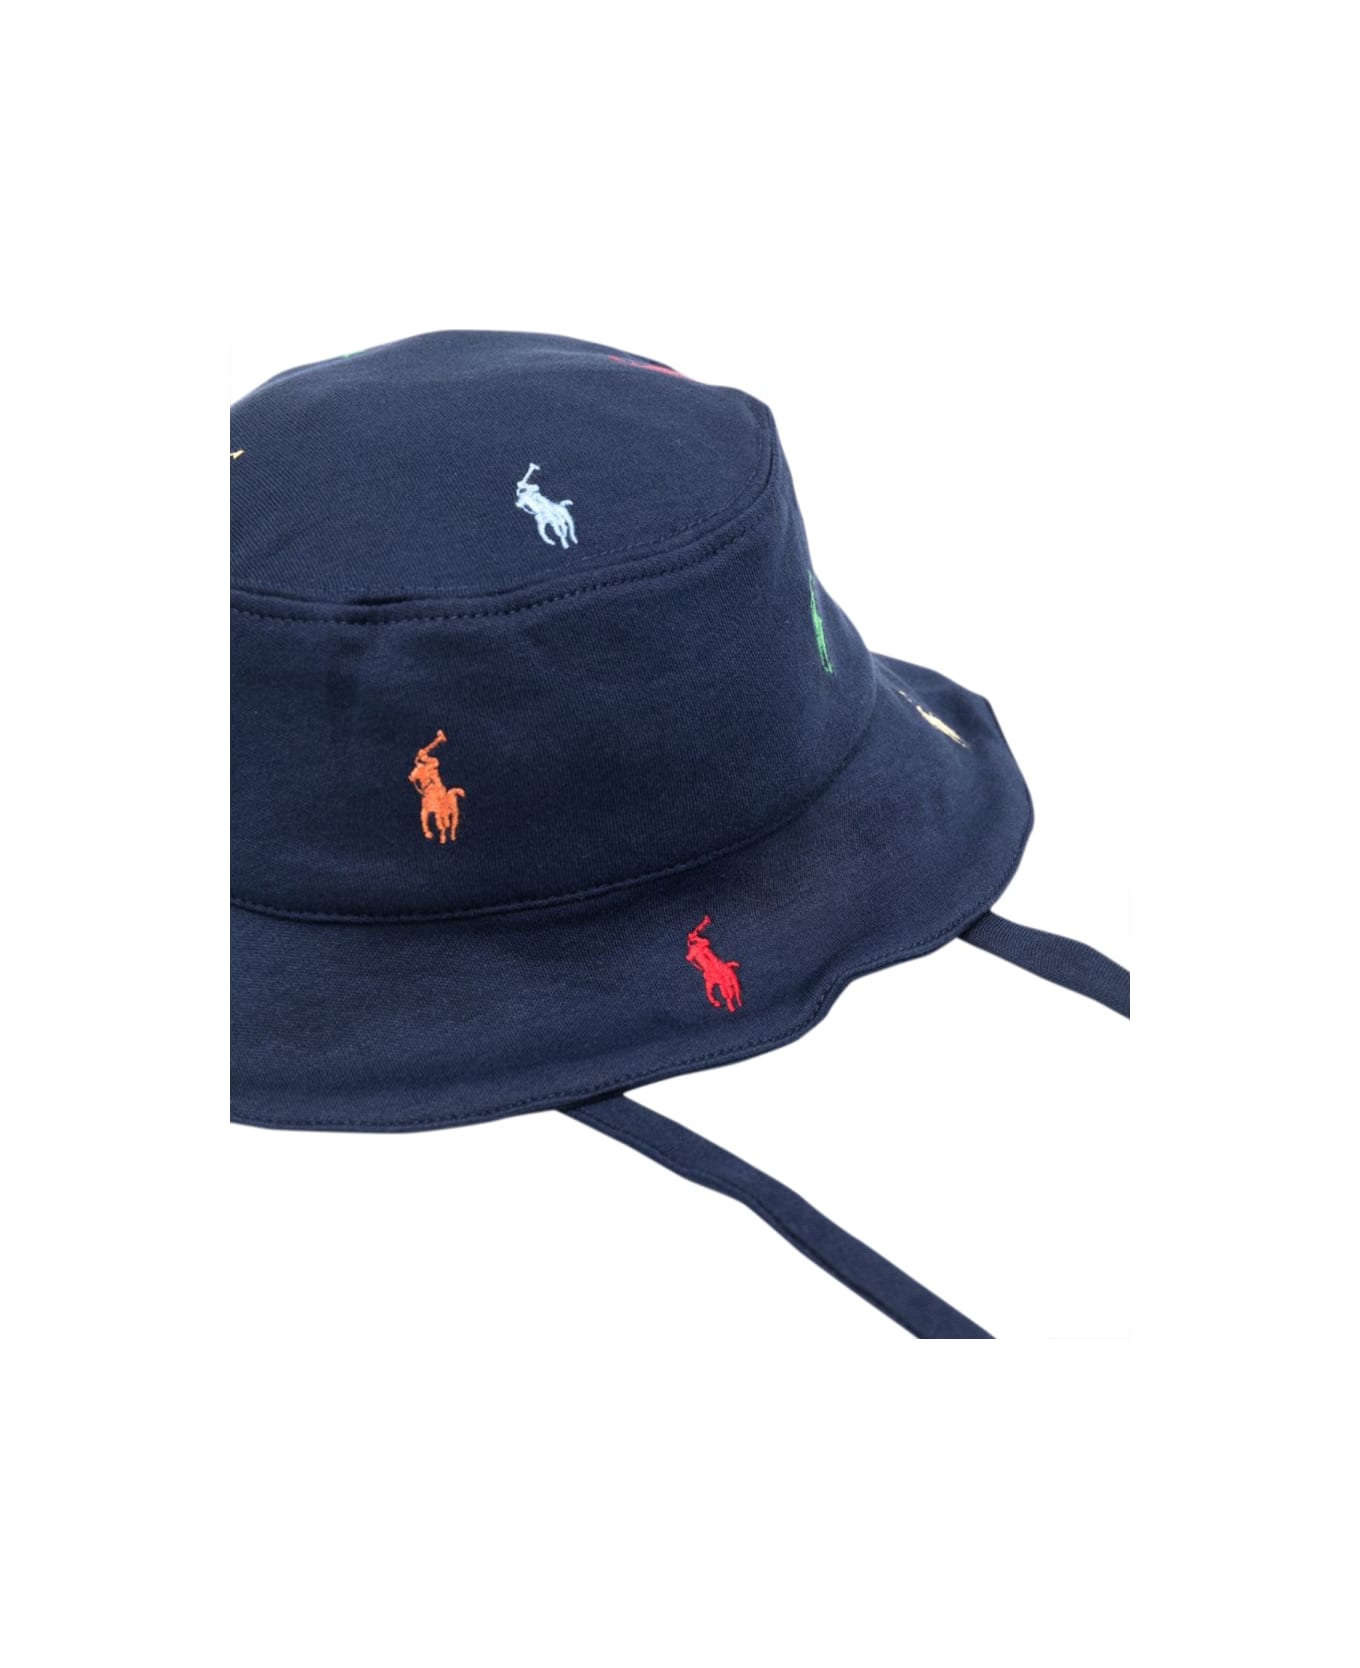 Polo Ralph Lauren Hat-headwear-hat - BLUE